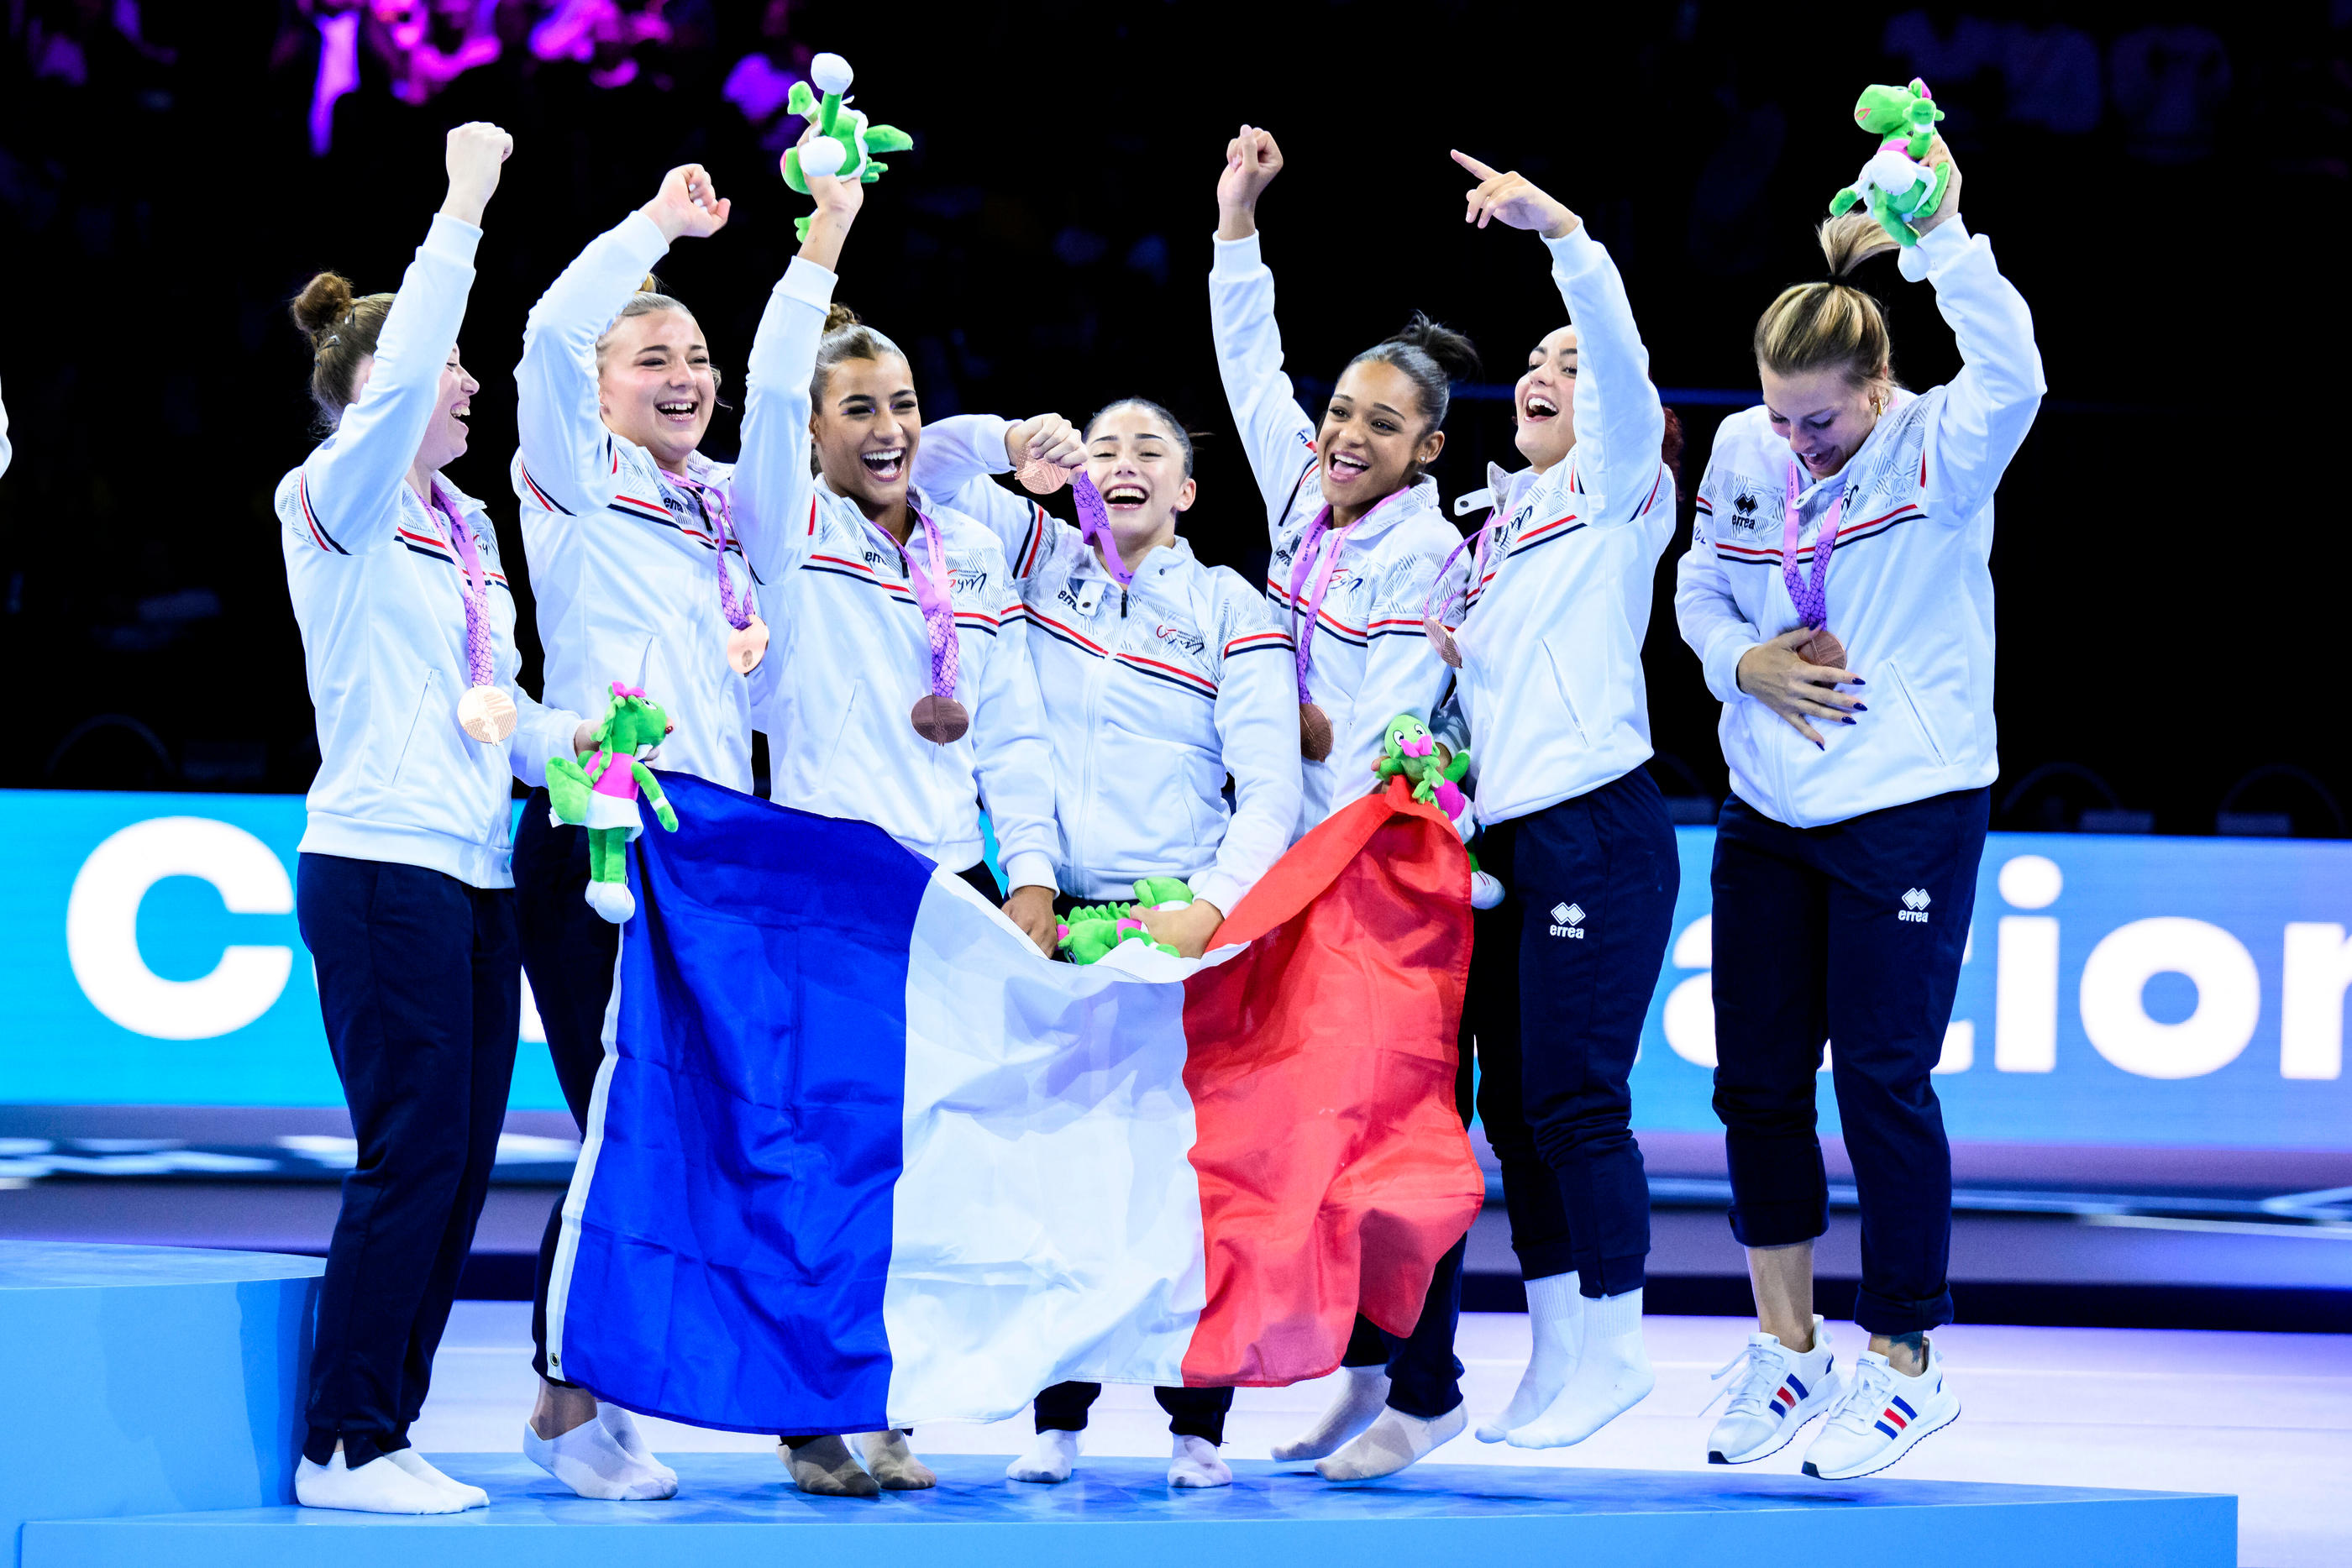 Ce n'est que la deuxième fois dans l'histoire qu'une équipe de France de gymnastique monte sur un podium mondial. Bis repetita aux JO l'an prochain à Paris ? Icon Sport/PictureAlliance/Tom Weller